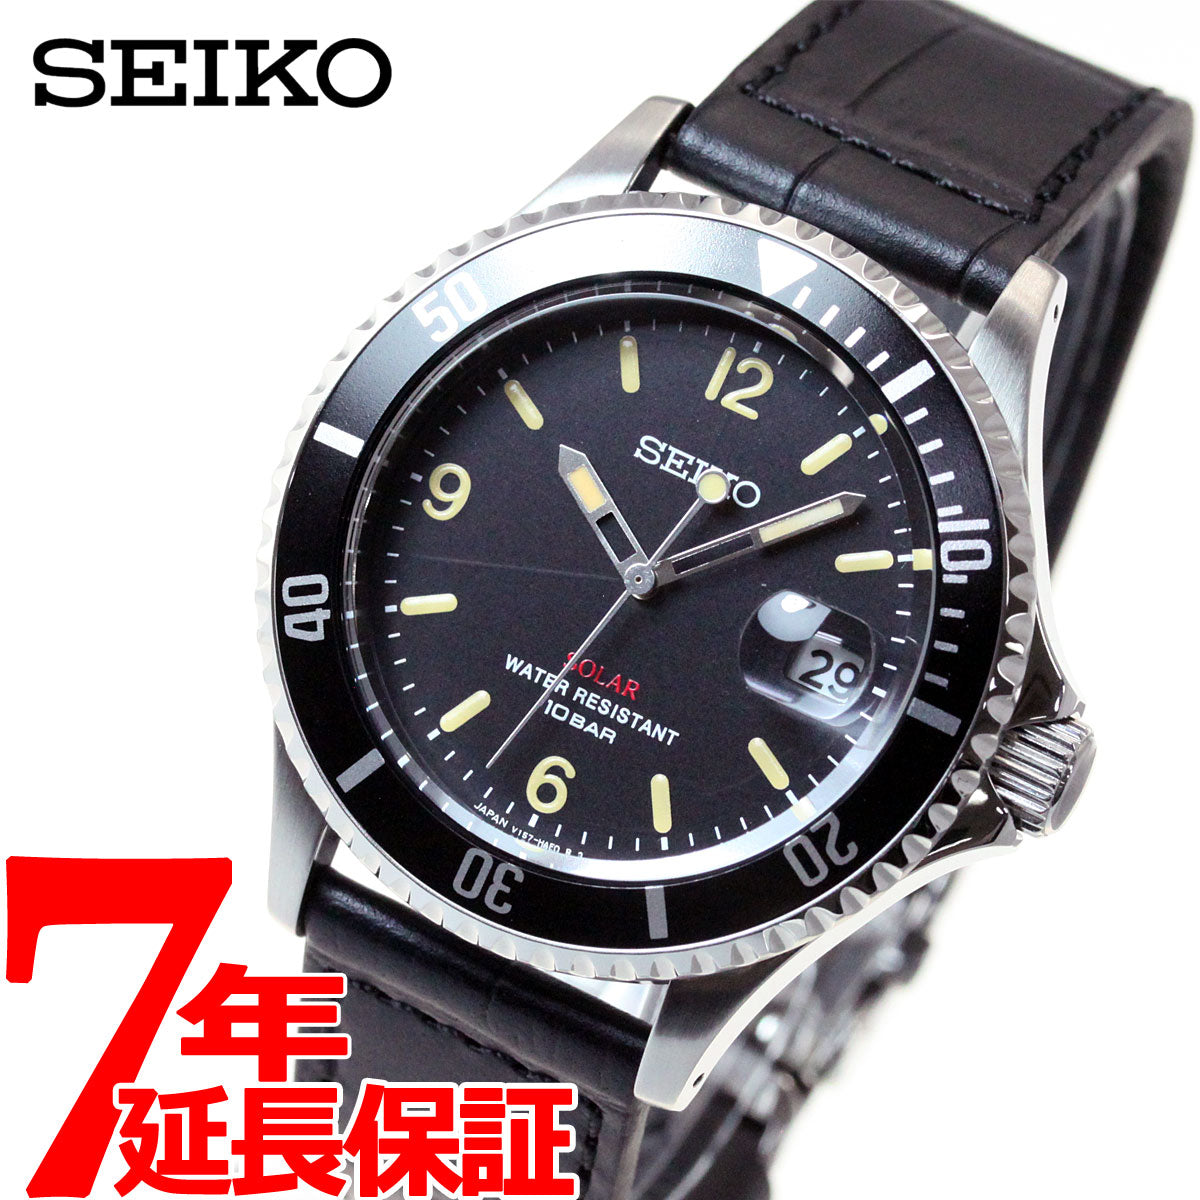 20年以上前に購入した物ですSEIKO  WATER PROOF   腕時計